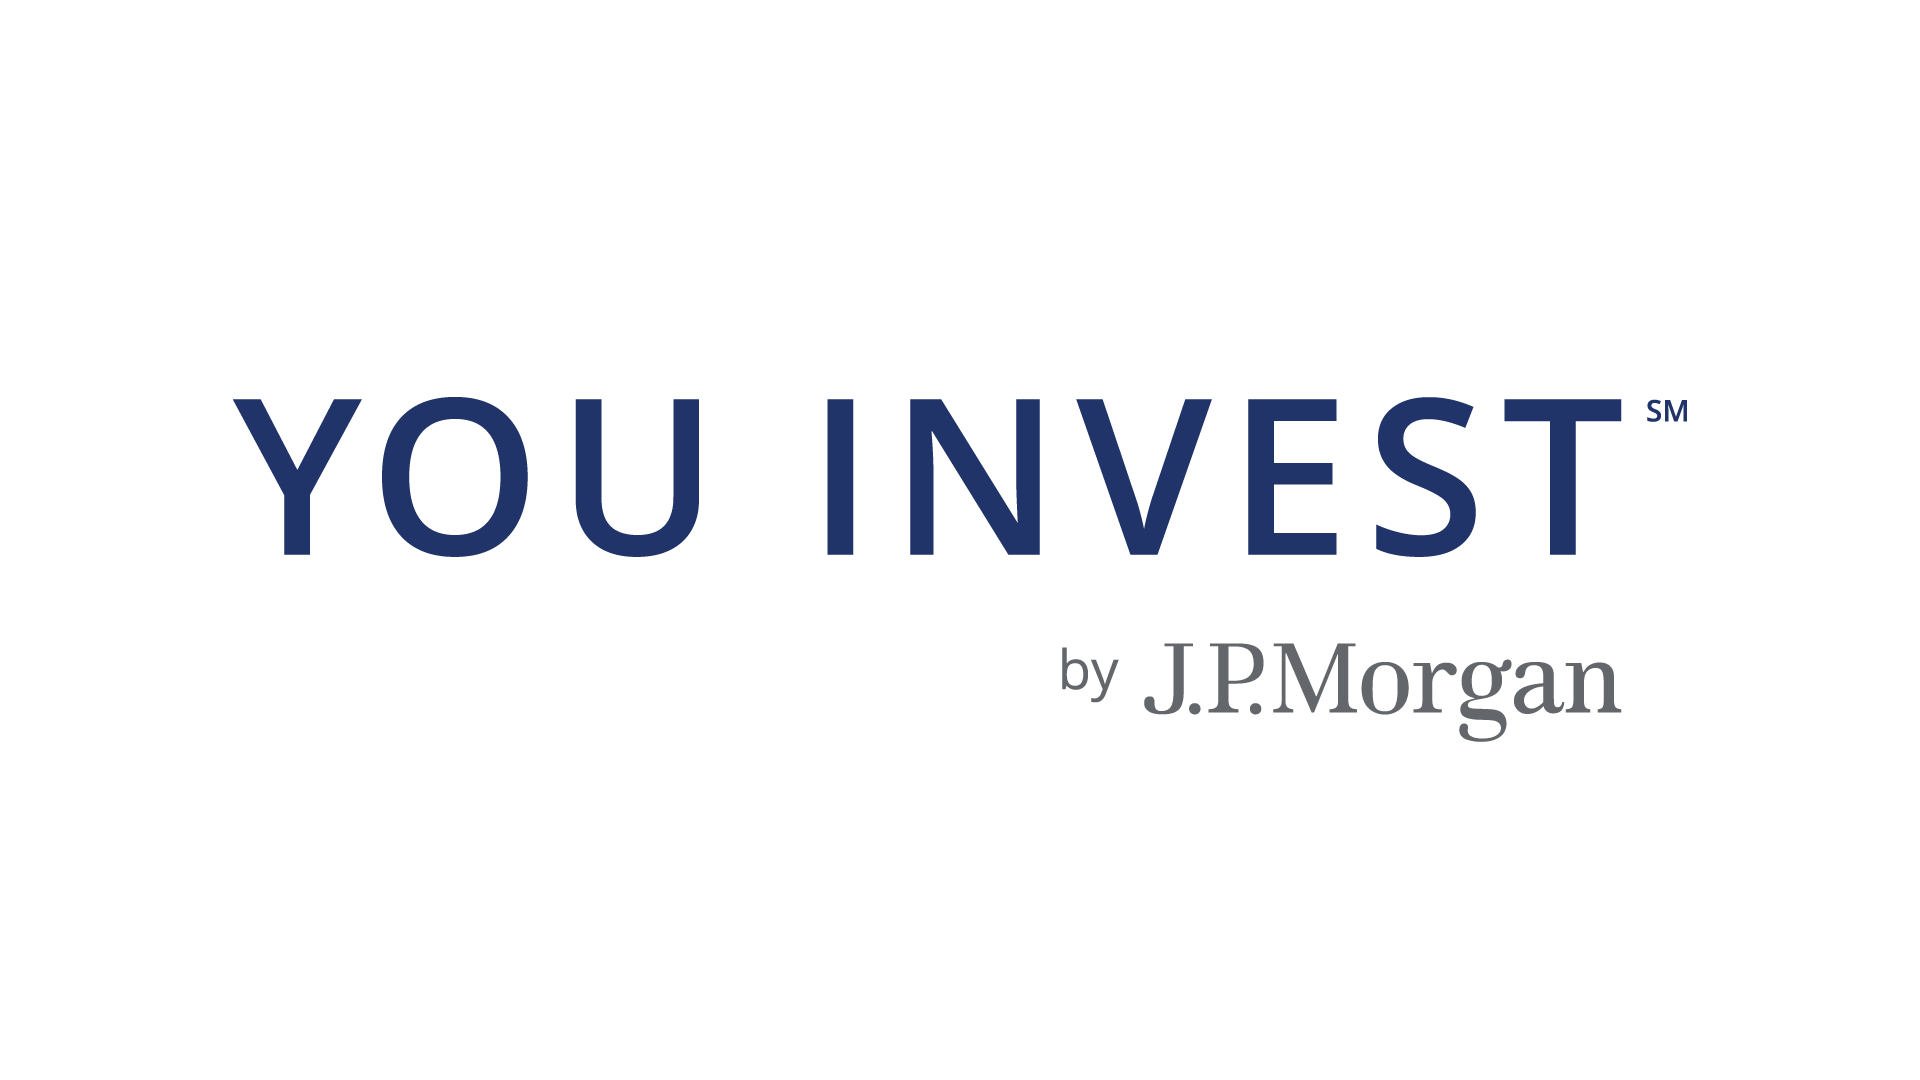 JPM Logo - JPMorgan Chase & Co. (NYSE: JPM) Rings the NYSE Closing Bell®